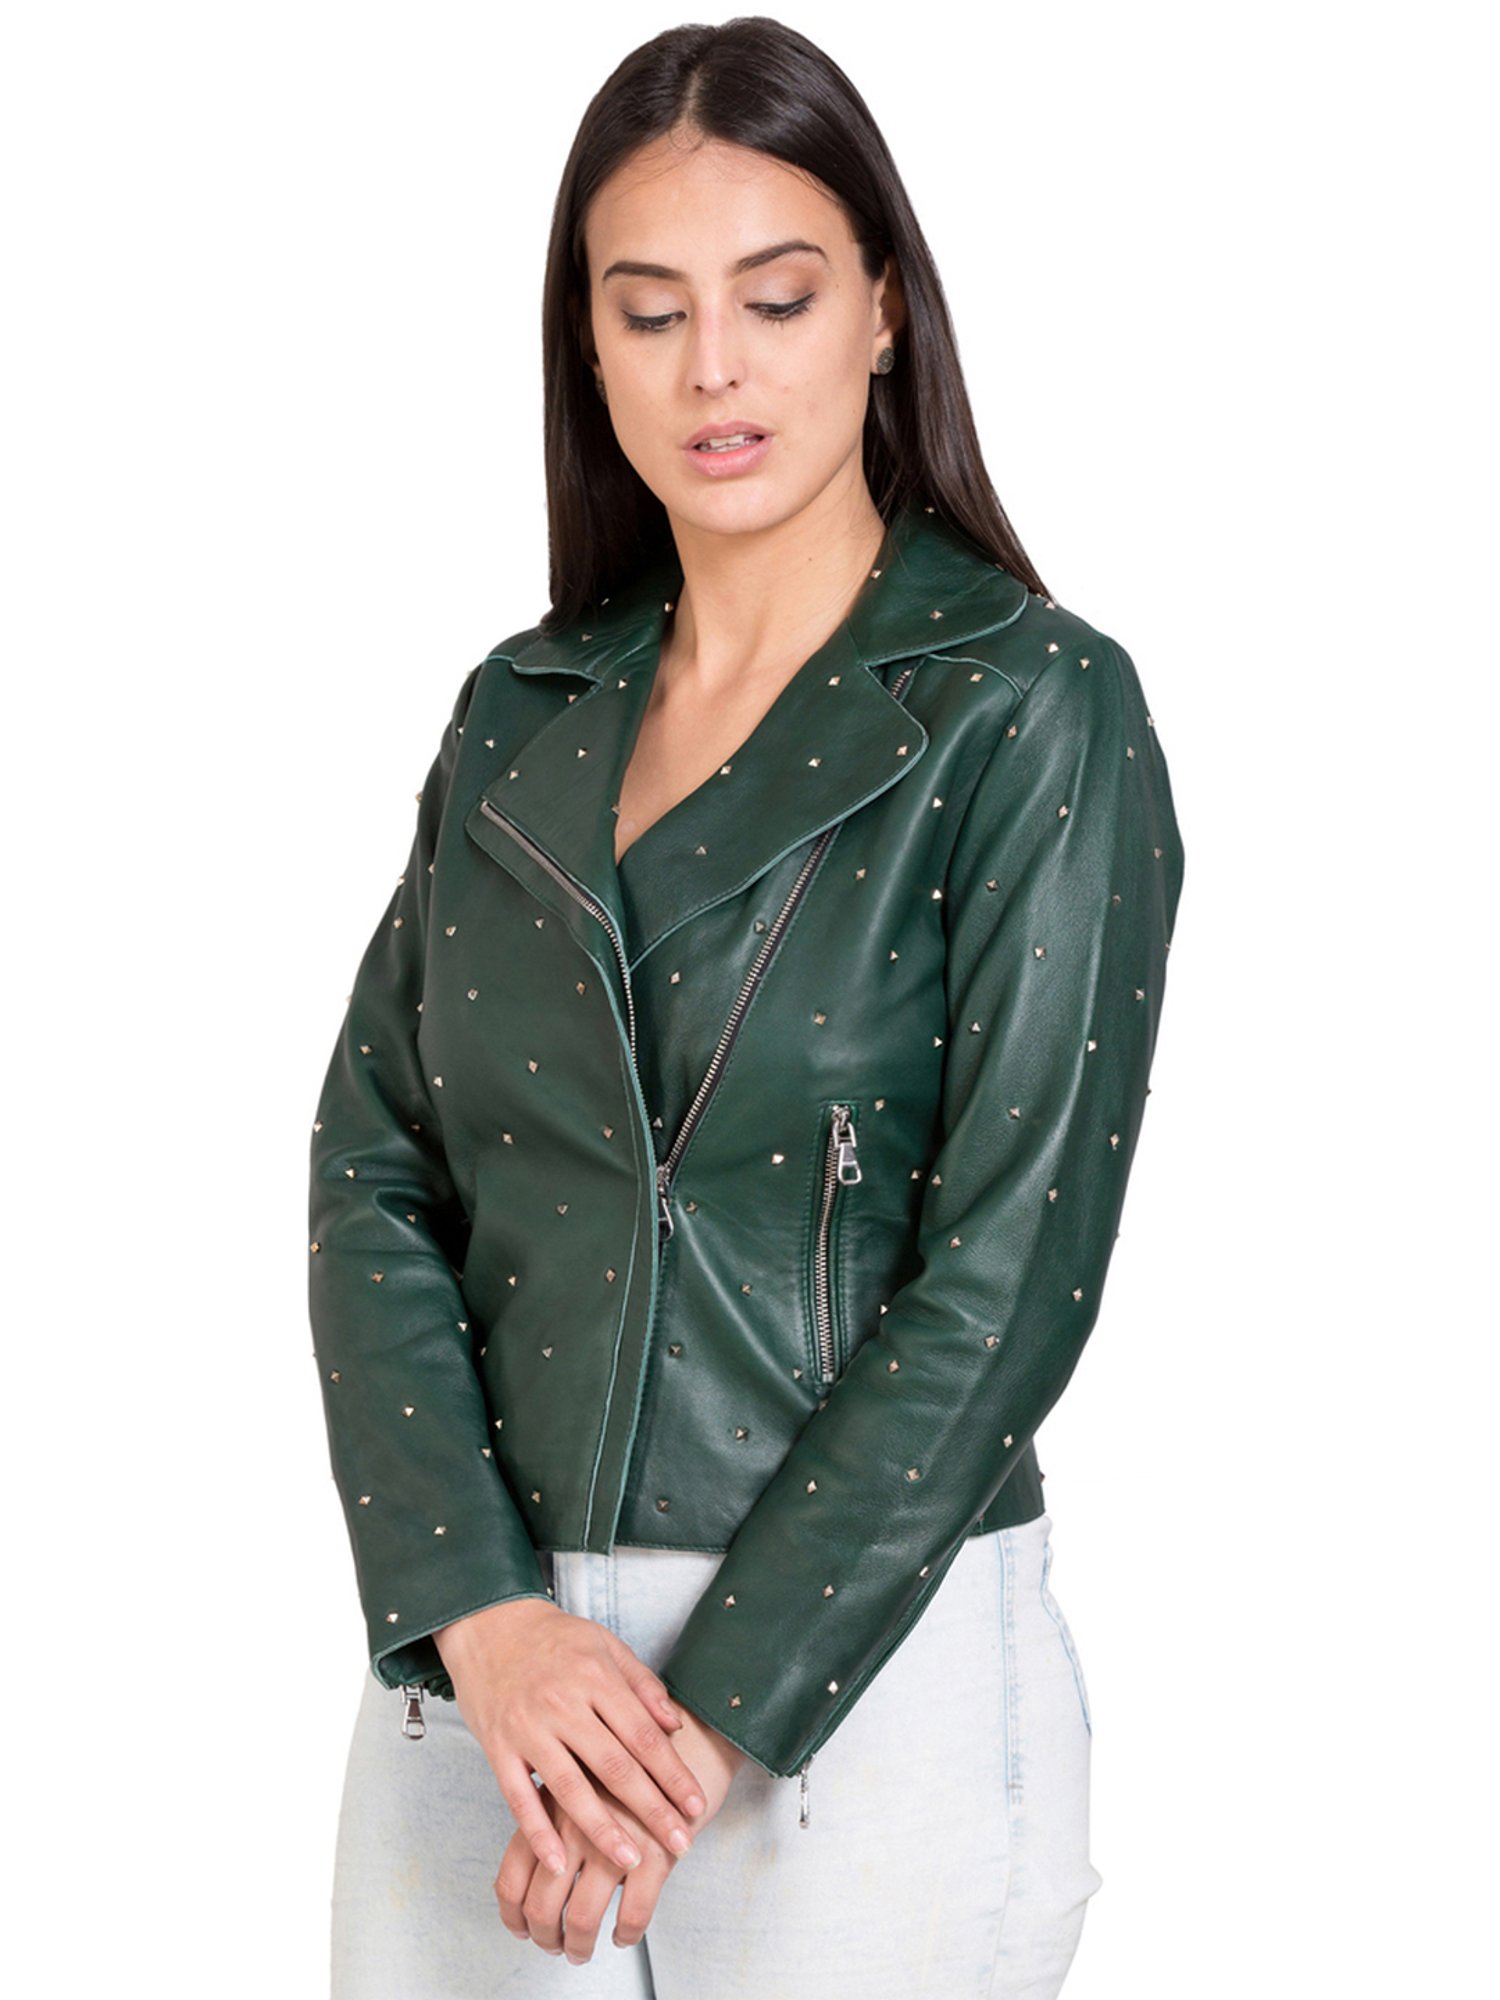 2020 stylish lady autumn winter merodi green short jackets women fashi – So  Chic Fashions